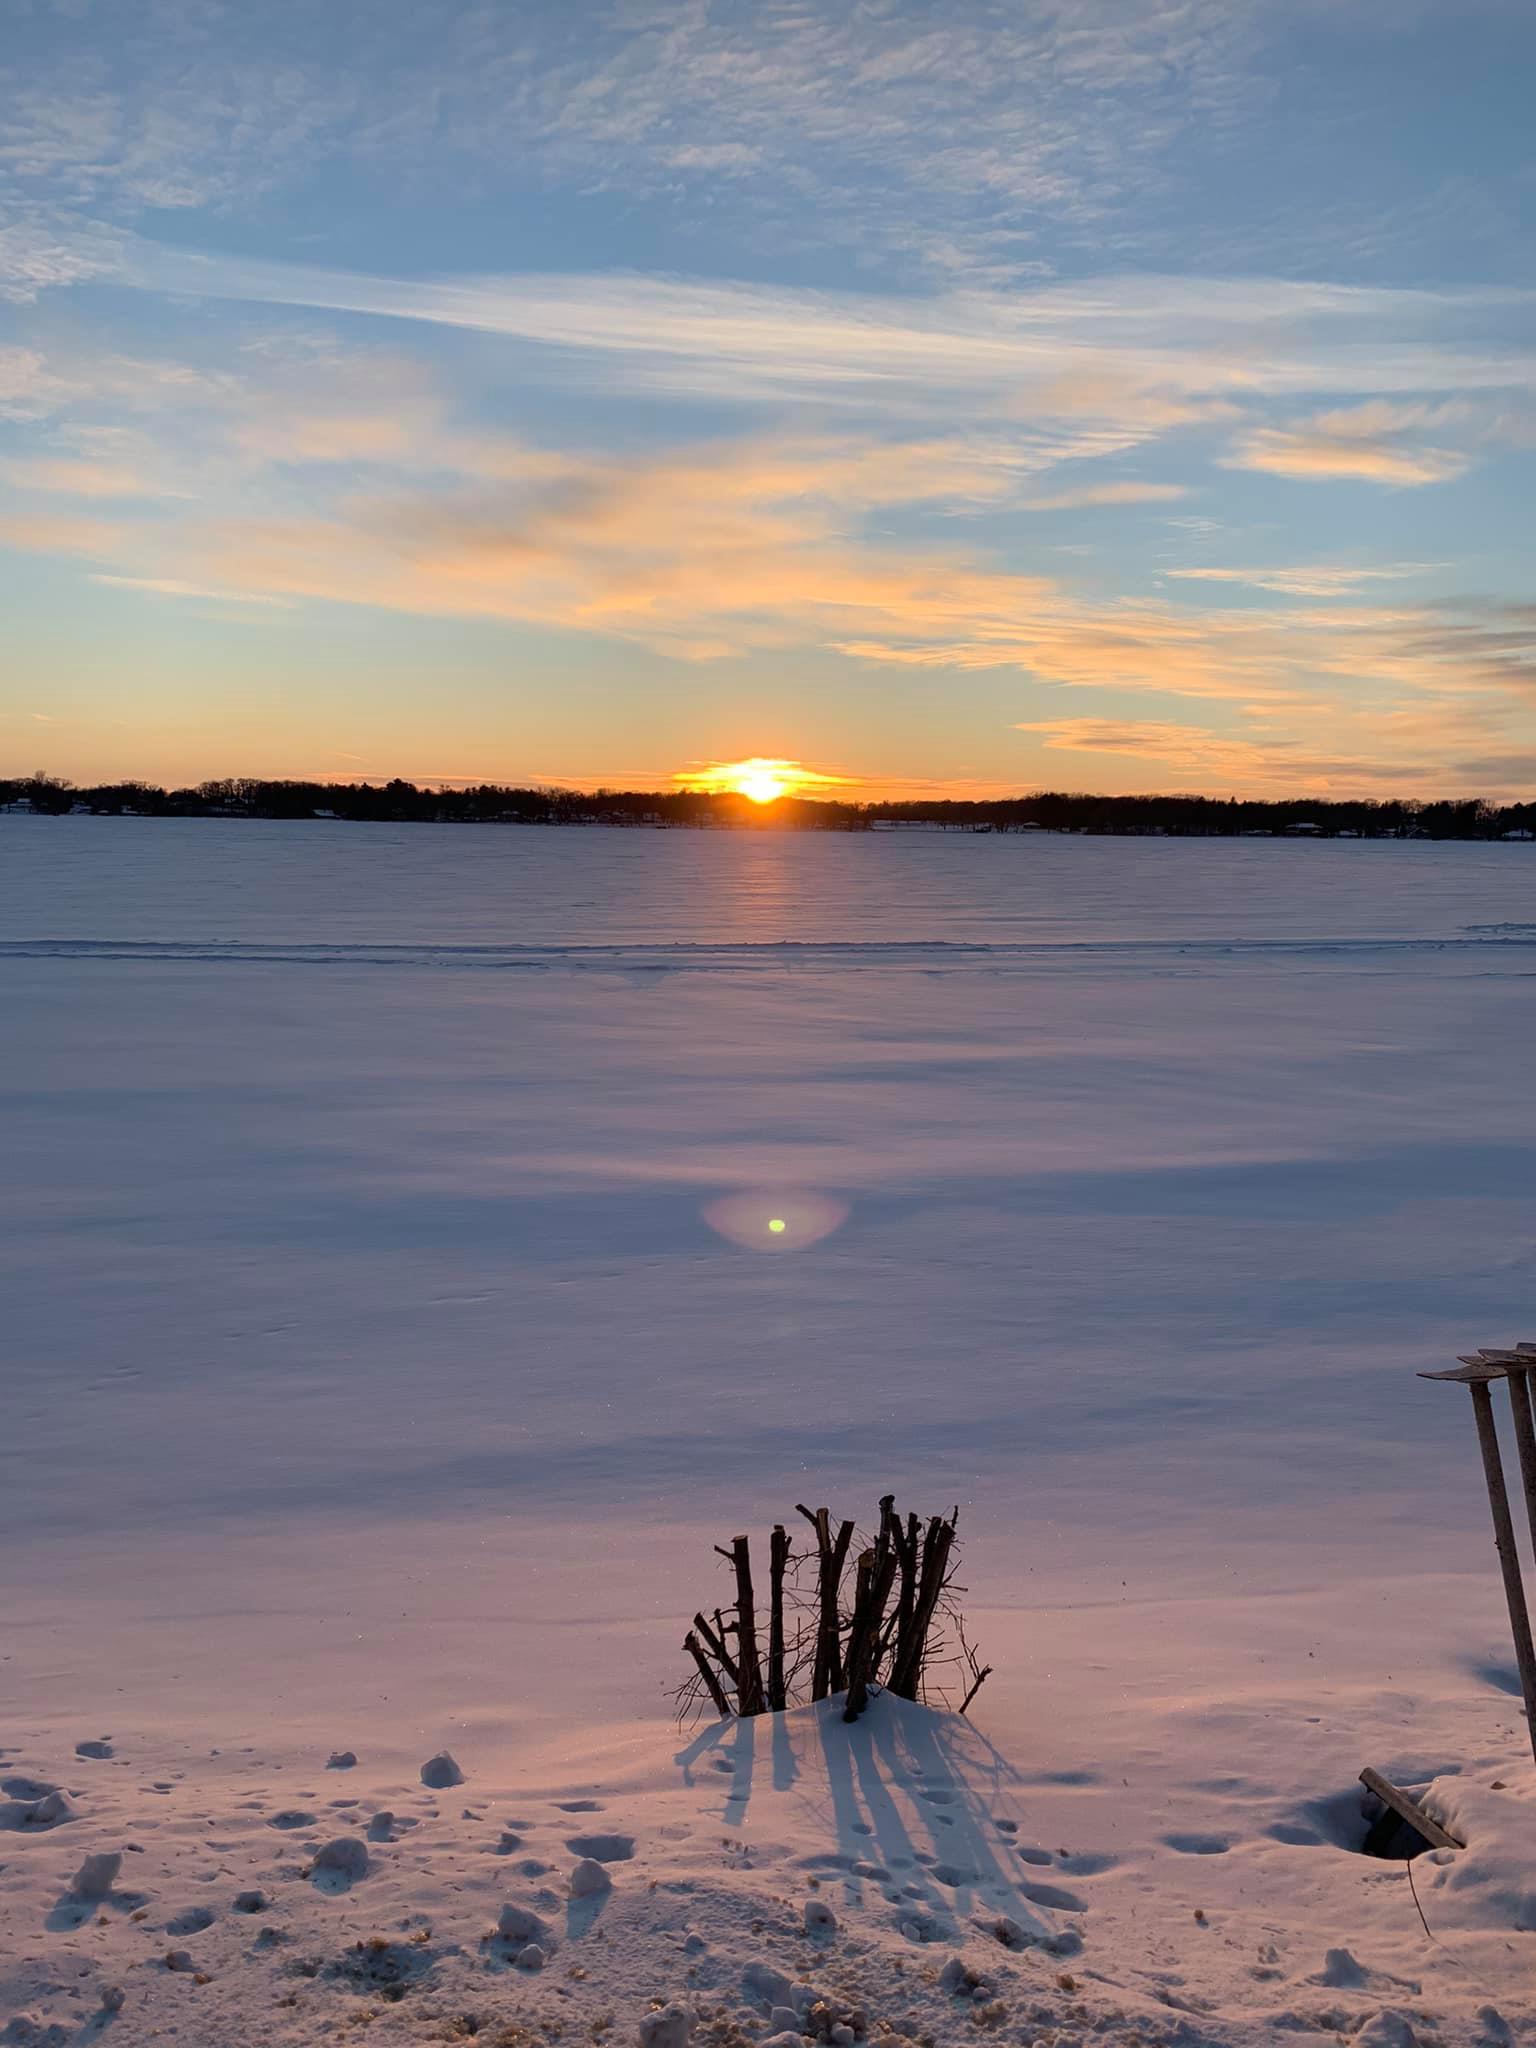 Lake Ripley in winter